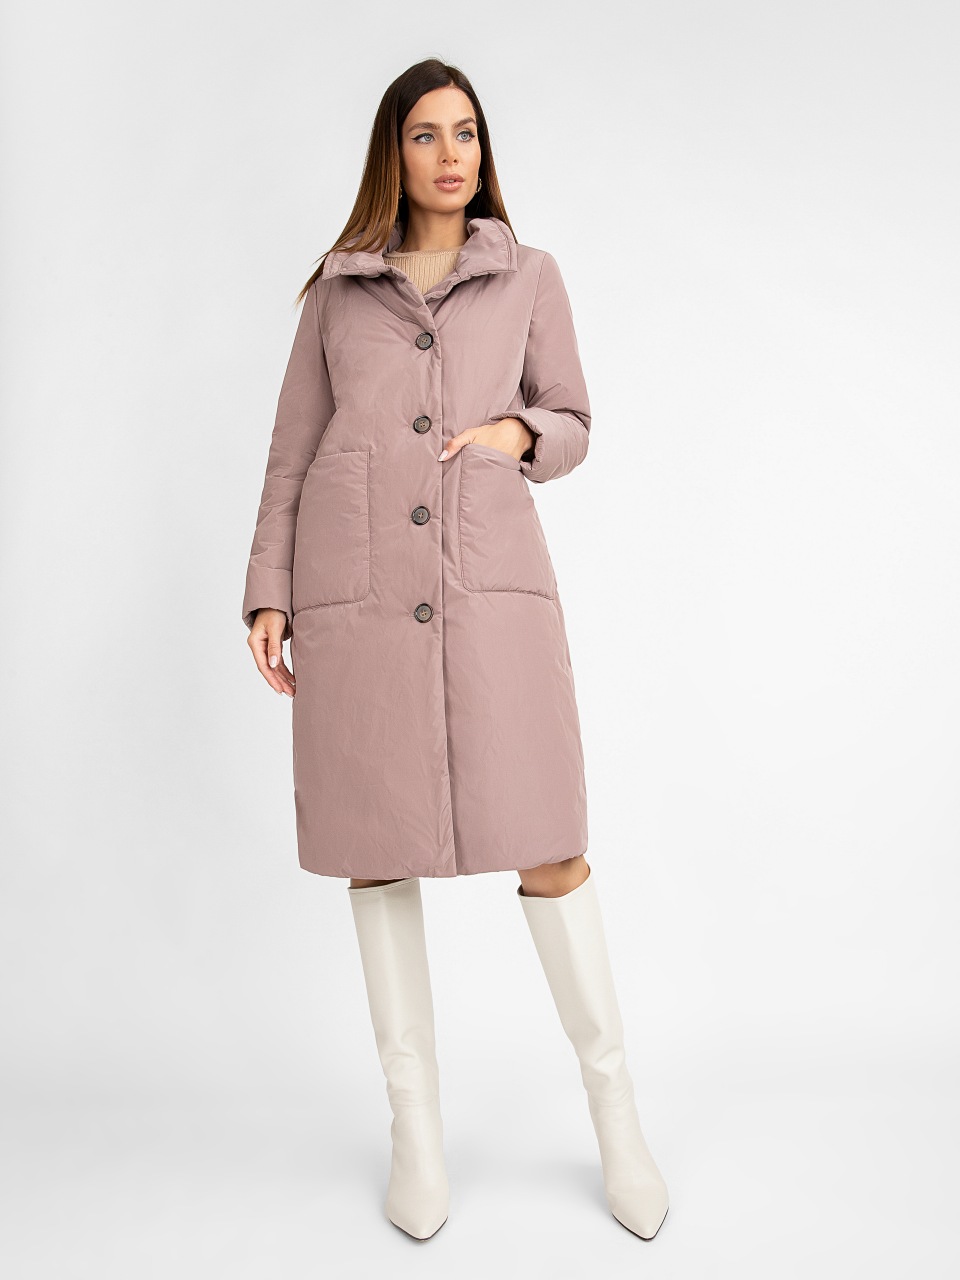 Пальто женское ElectraStyle 5У-2111-112 розовое 44 RU